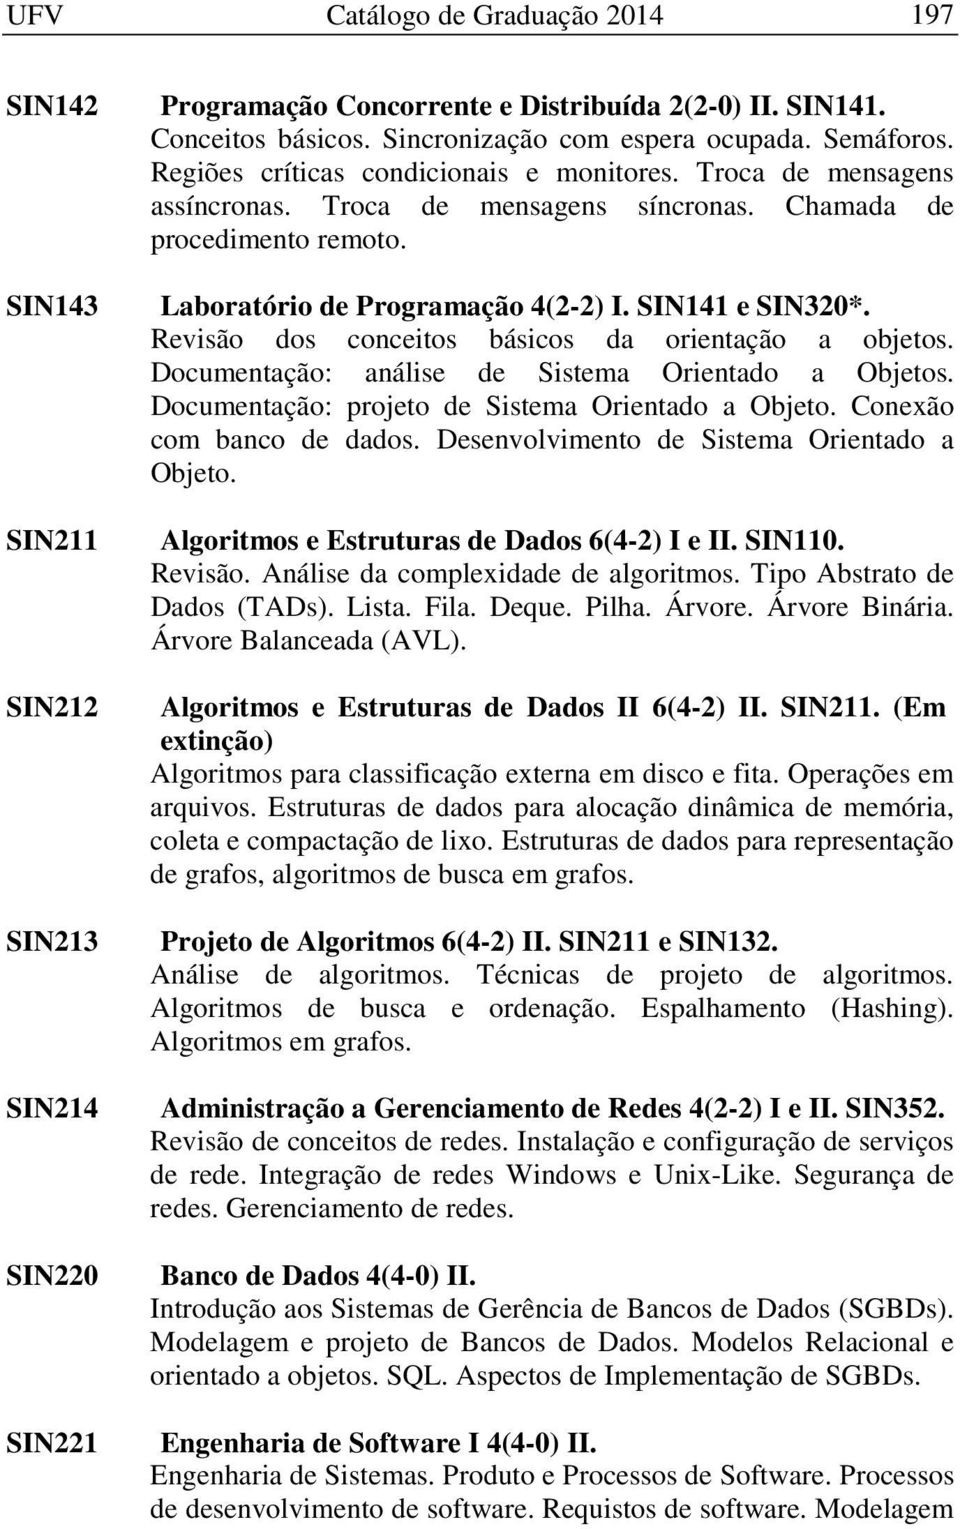 SIN141 e SIN320*. Revisão dos conceitos básicos da orientação a objetos. Documentação: análise de Sistema Orientado a Objetos. Documentação: projeto de Sistema Orientado a Objeto.